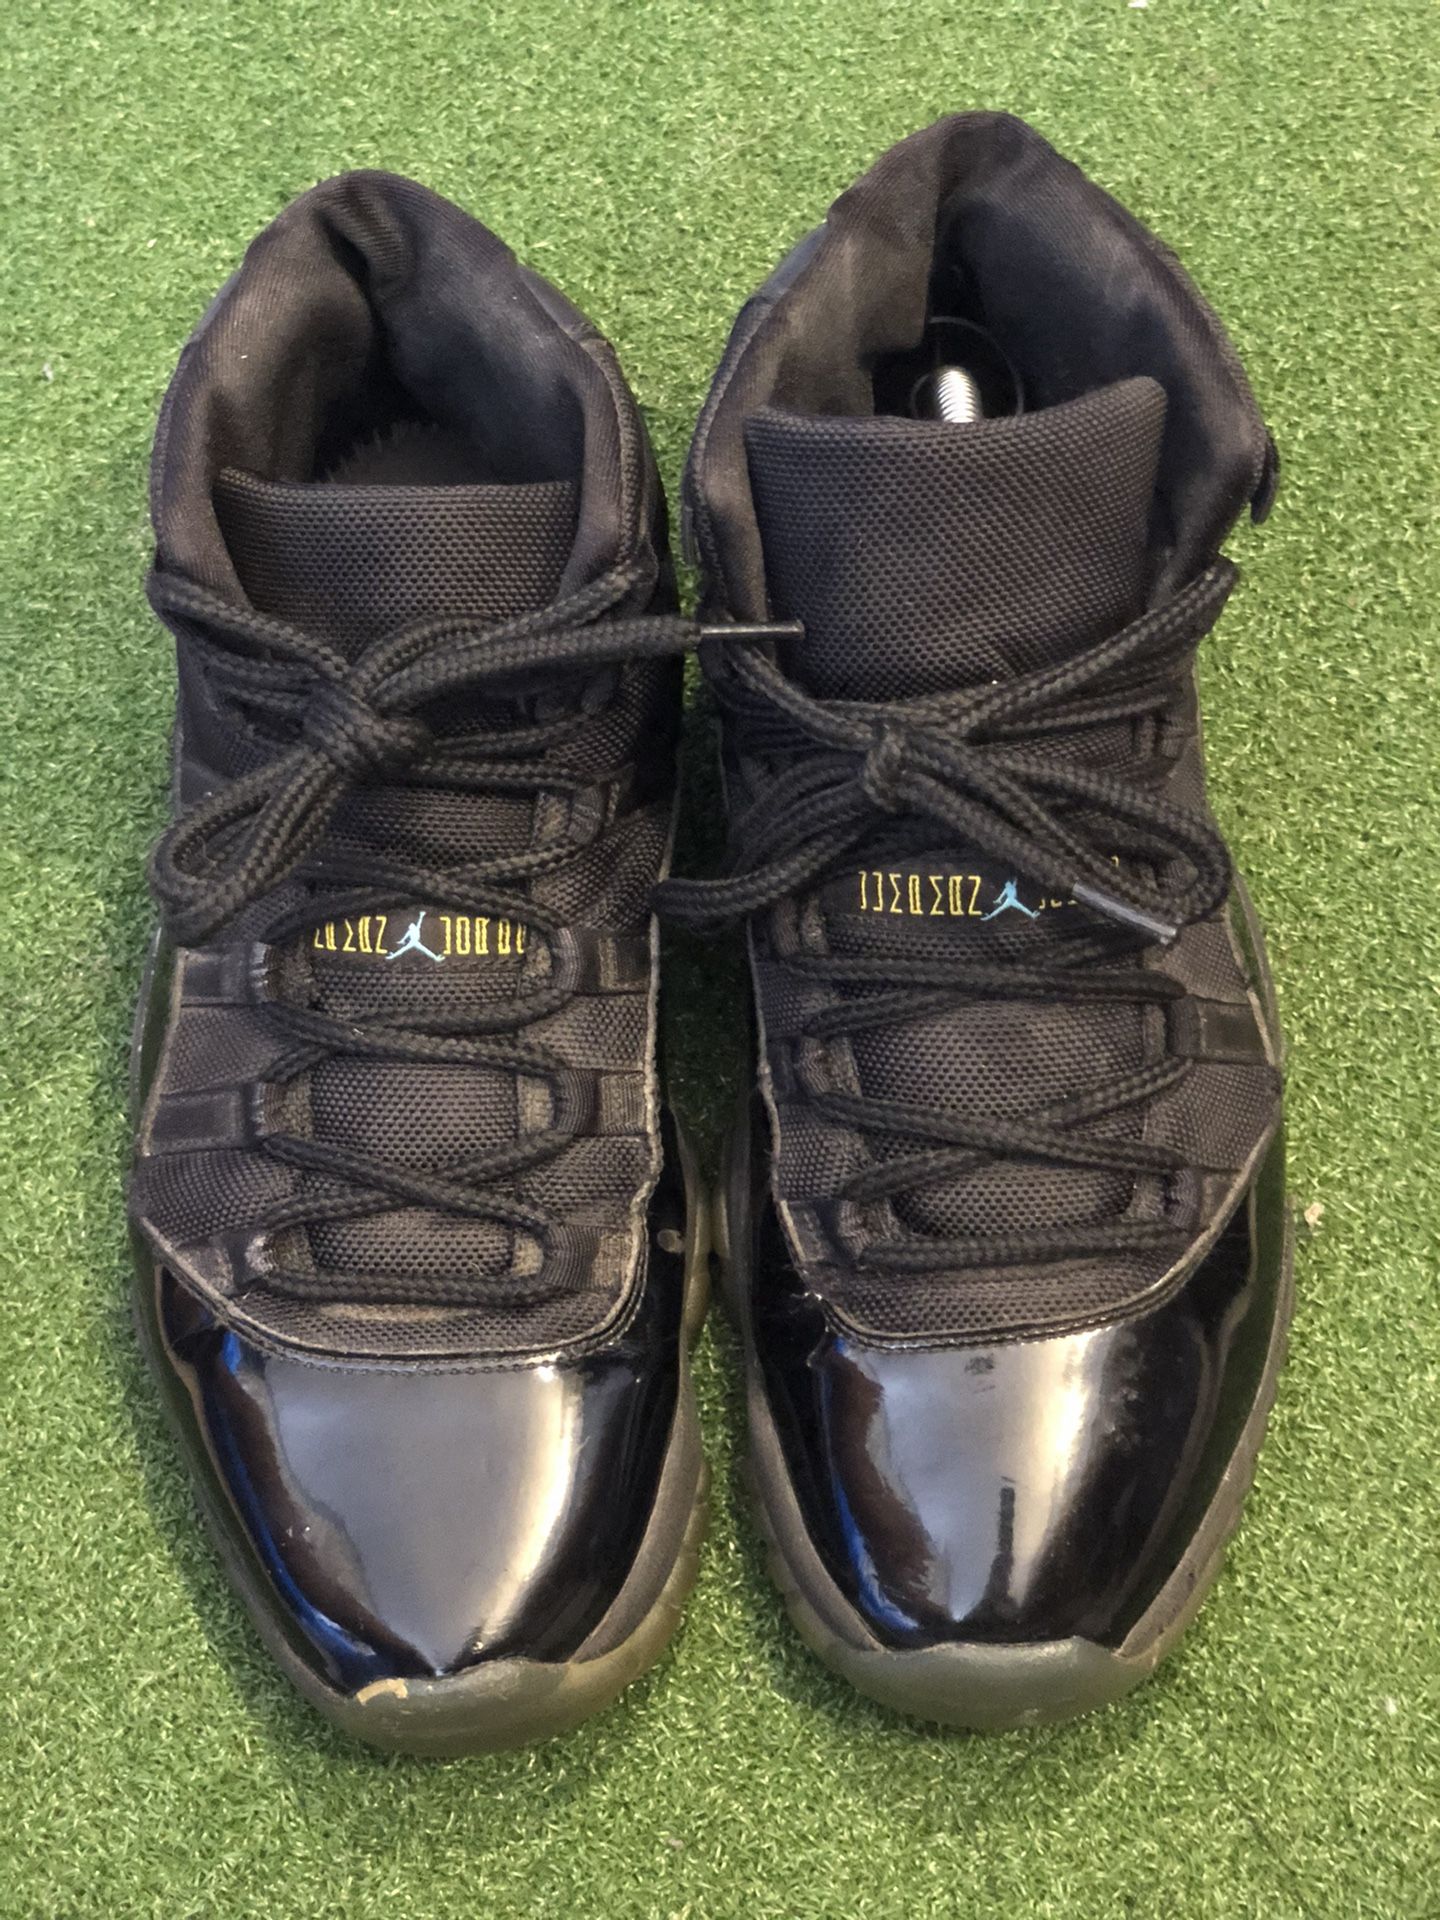 Nike Air Jordan 11 Gamma Blue Size 10.5